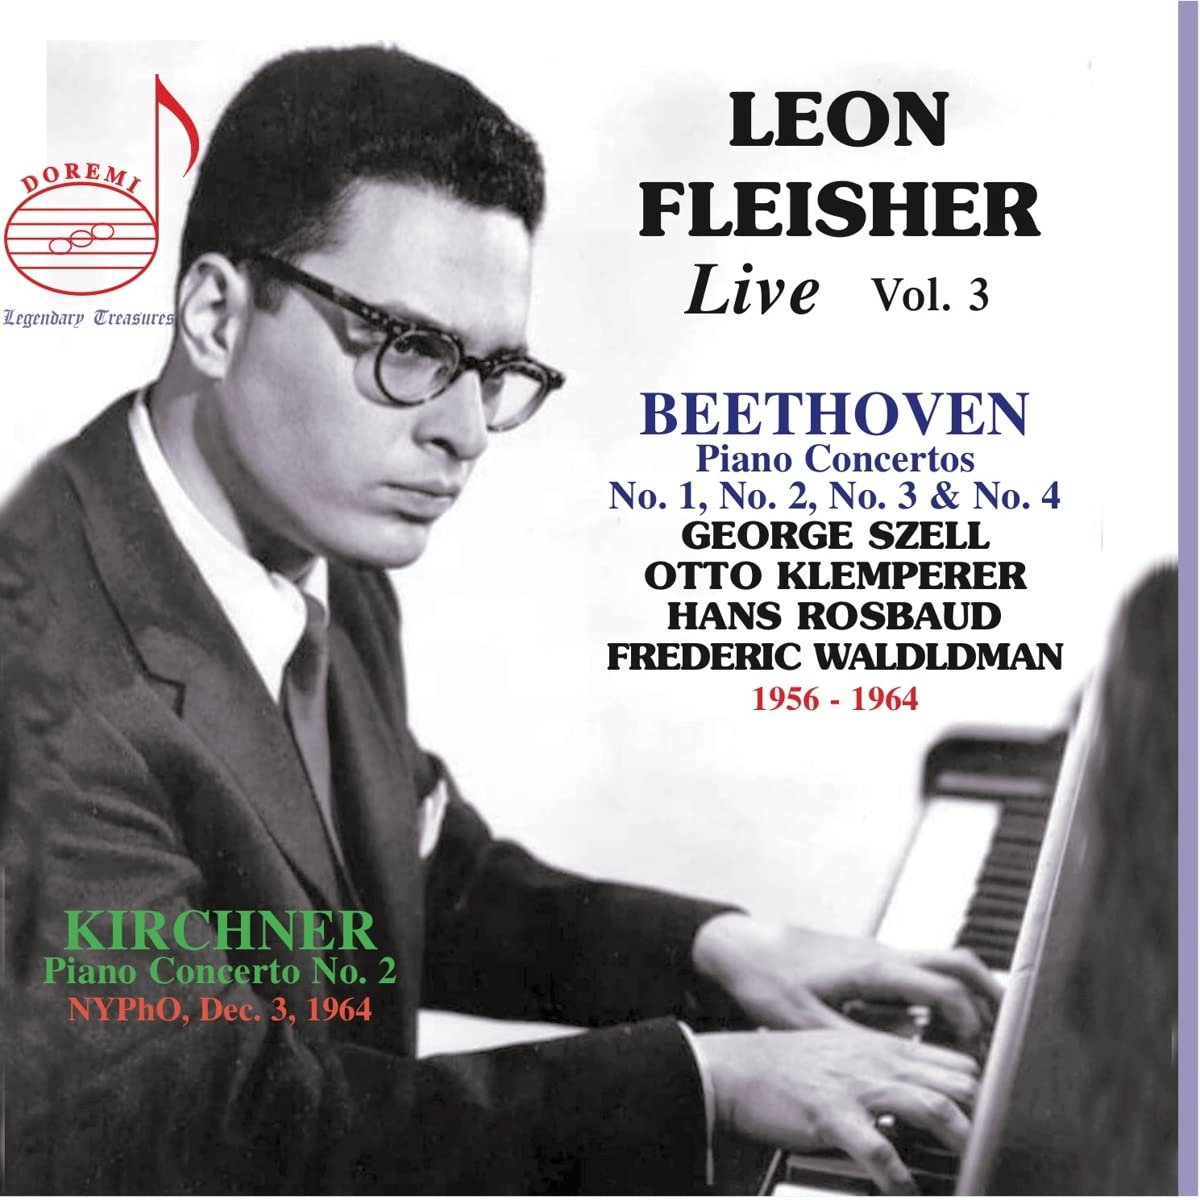 Audio Cd Leon Fleisher: Live, Vol. 3 - Beethoven, Kirchner NUOVO SIGILLATO, EDIZIONE DEL 08/07/2022 SUBITO DISPONIBILE